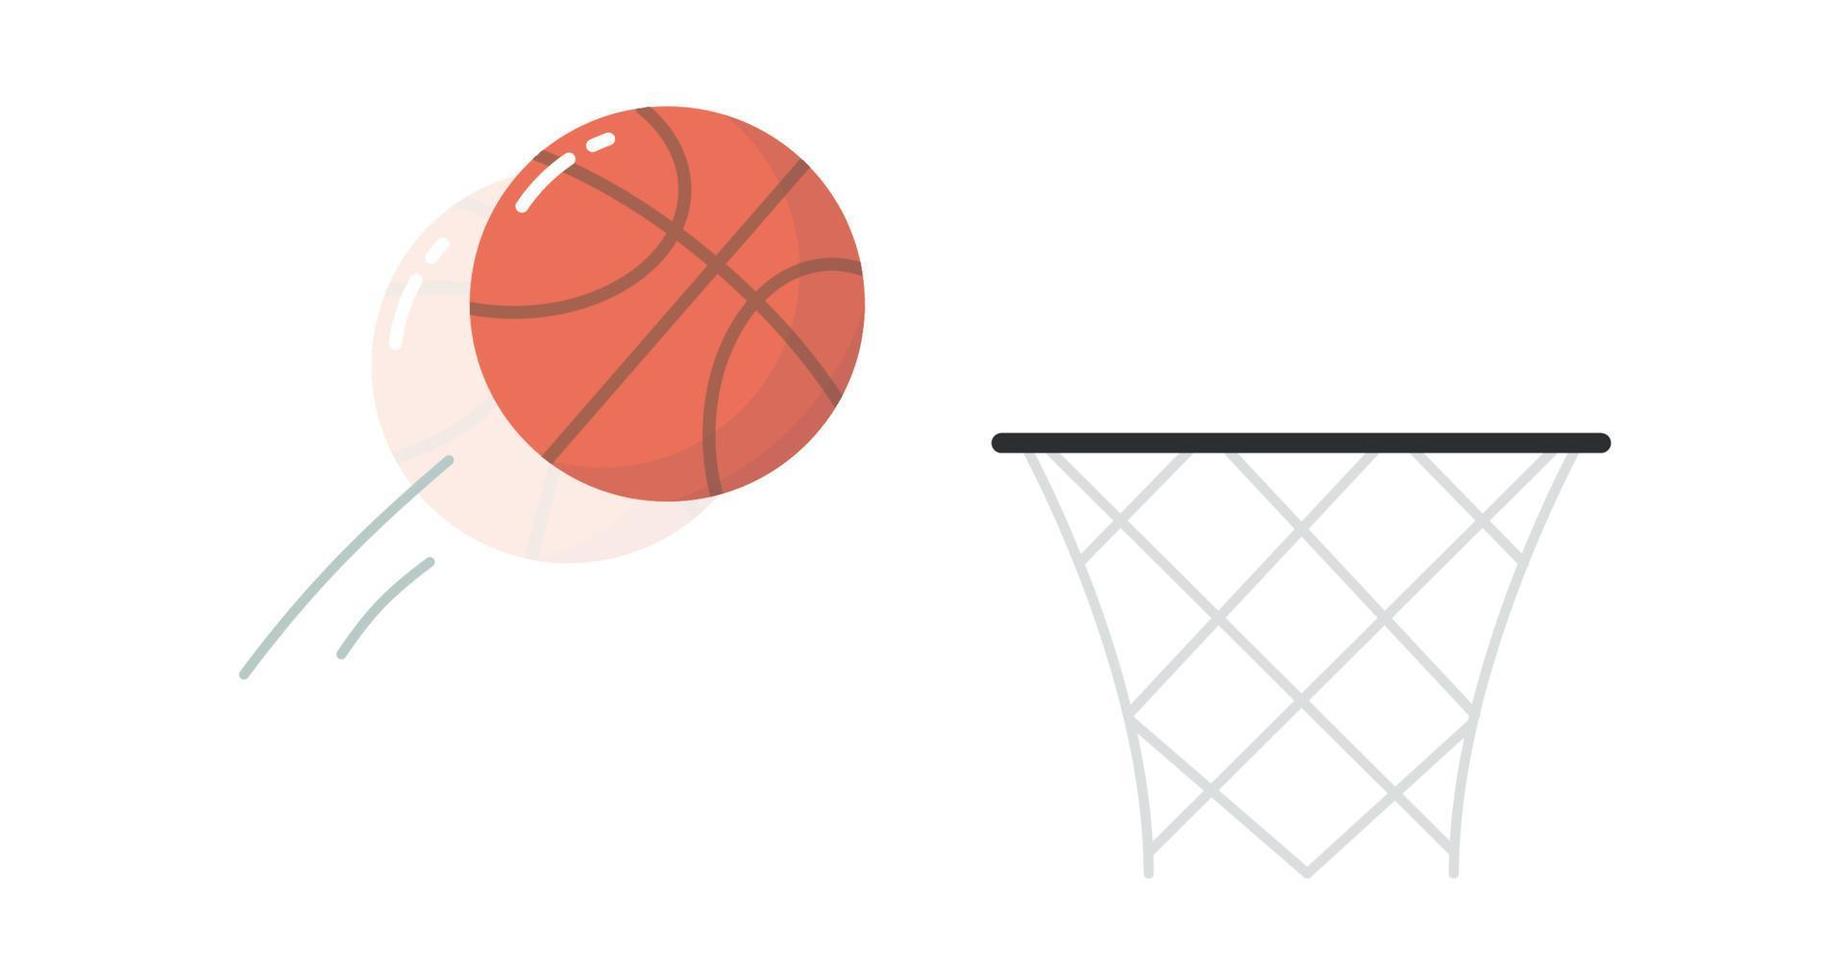 símbolo de bola de basquete e ilustração vetorial plana de equipamentos esportivos laranja redondos. vetor